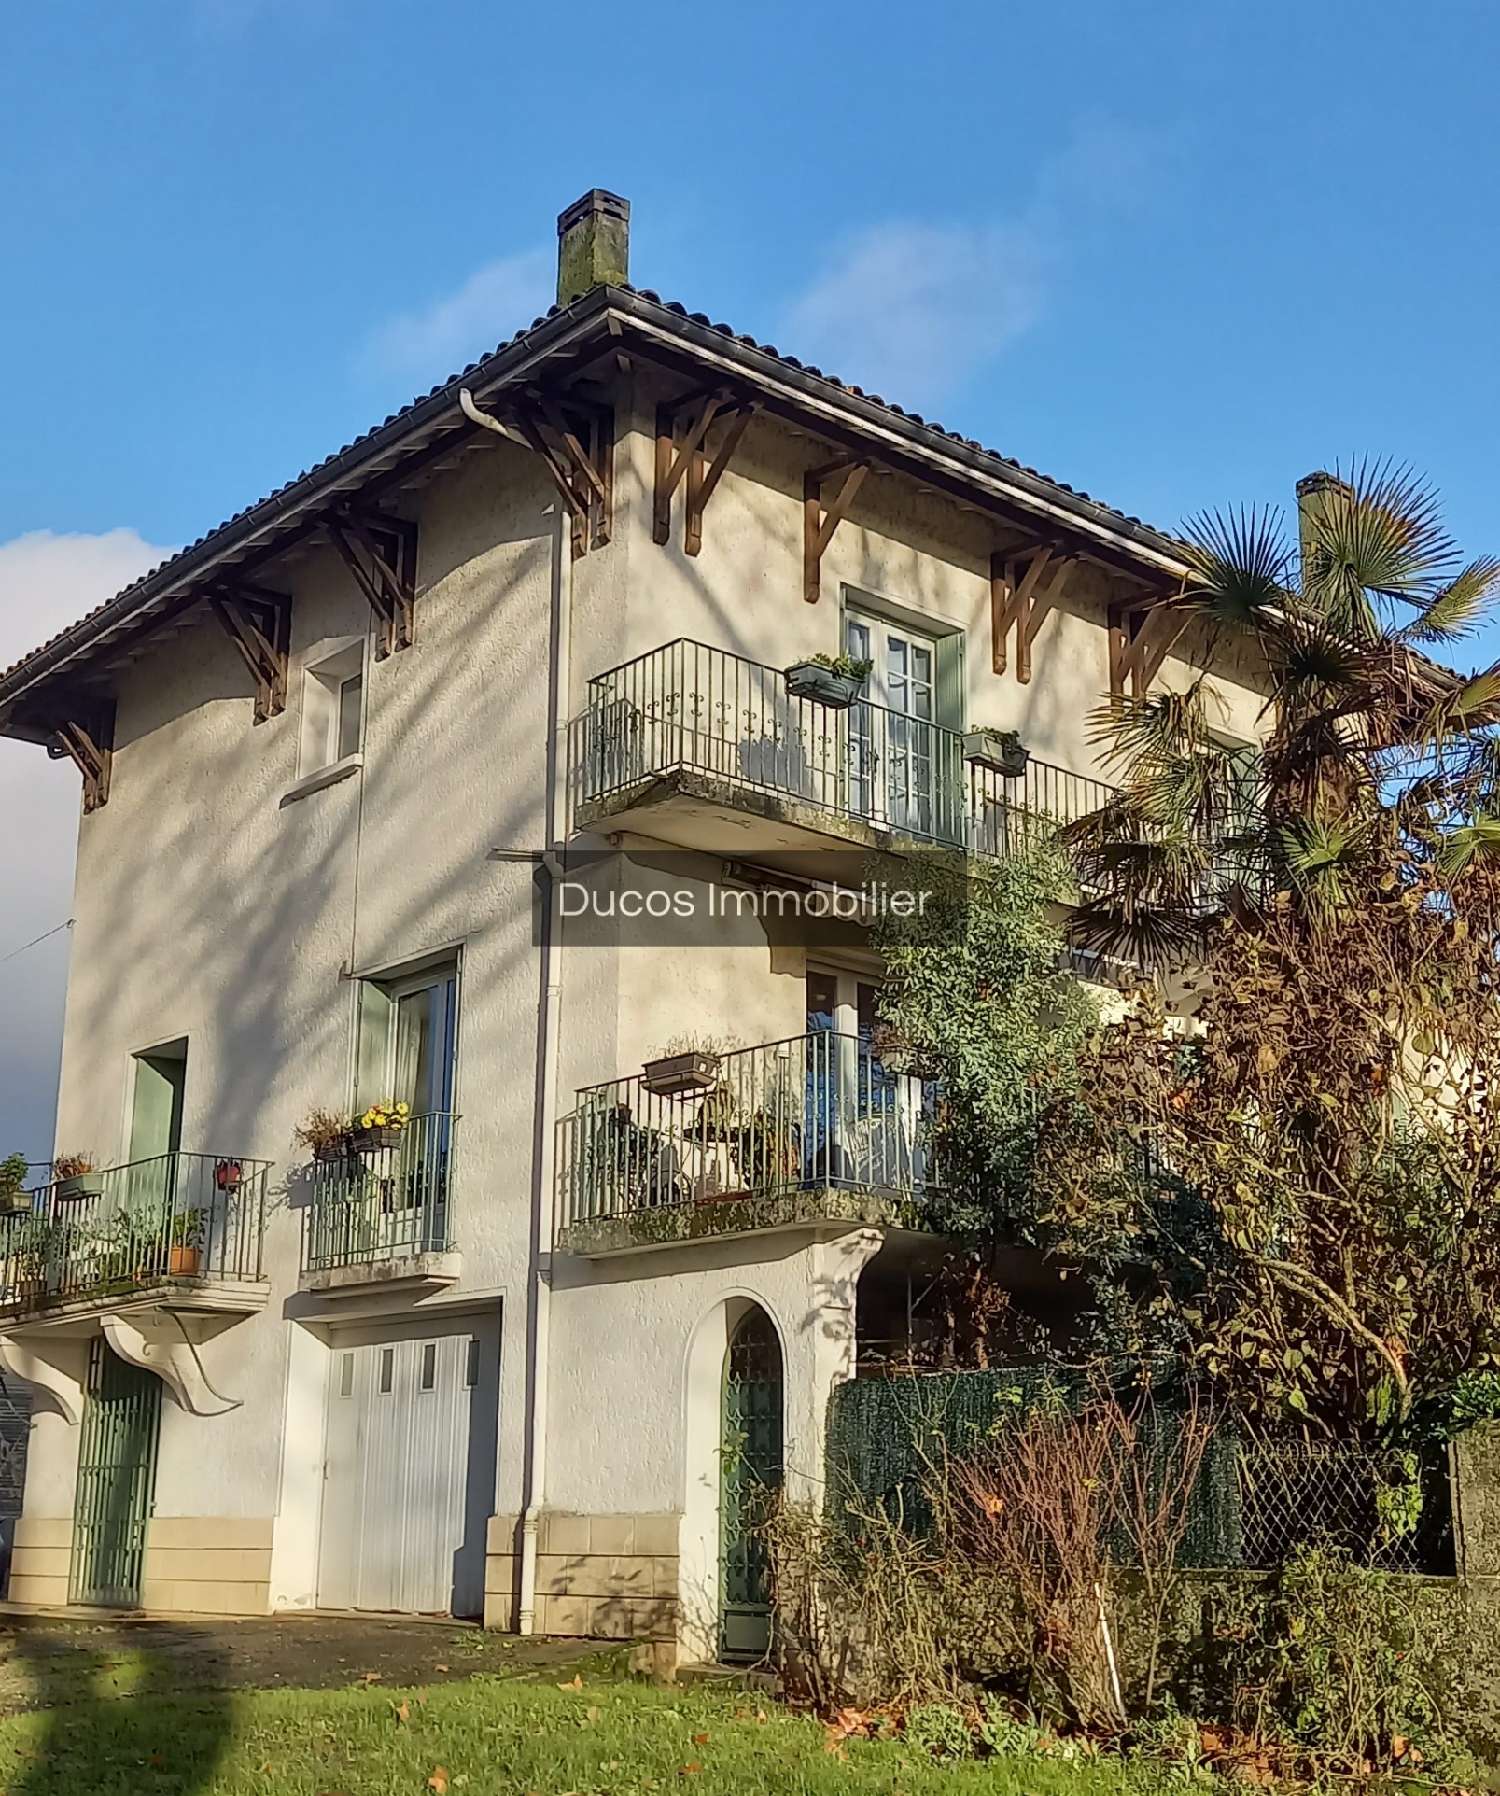  à vendre maison Marmande Lot-et-Garonne 2